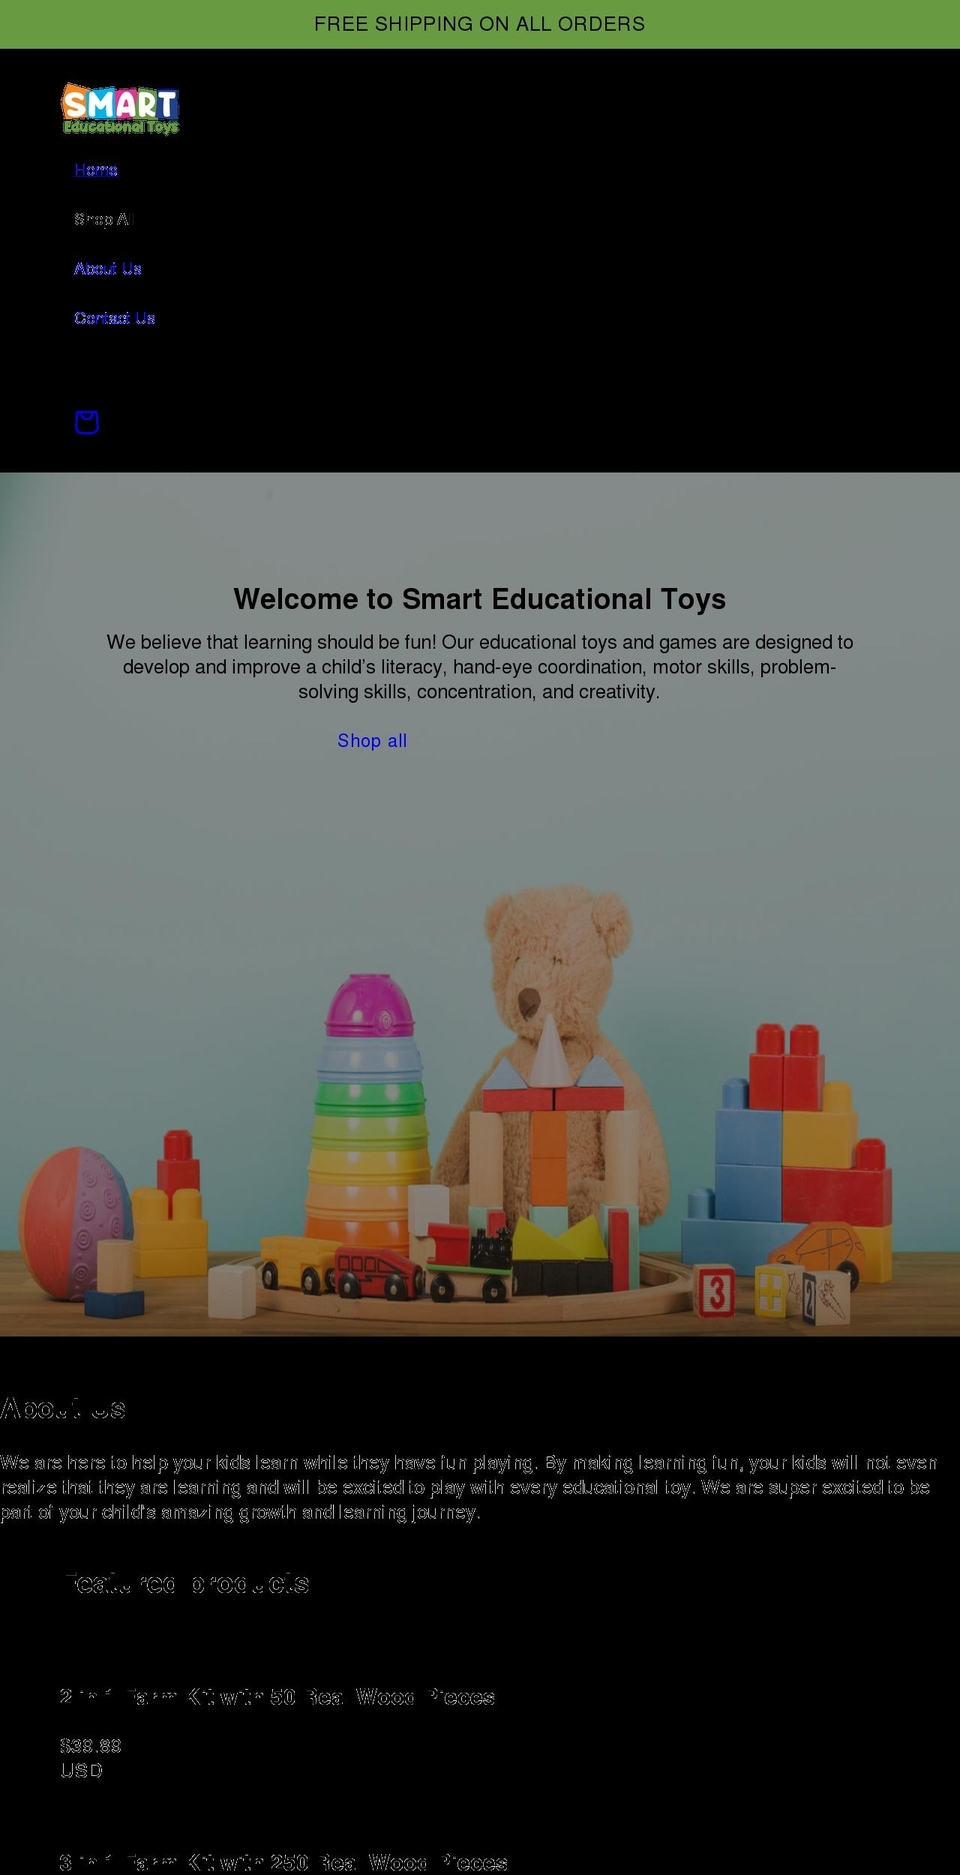 smarteducationaltoys.com shopify website screenshot